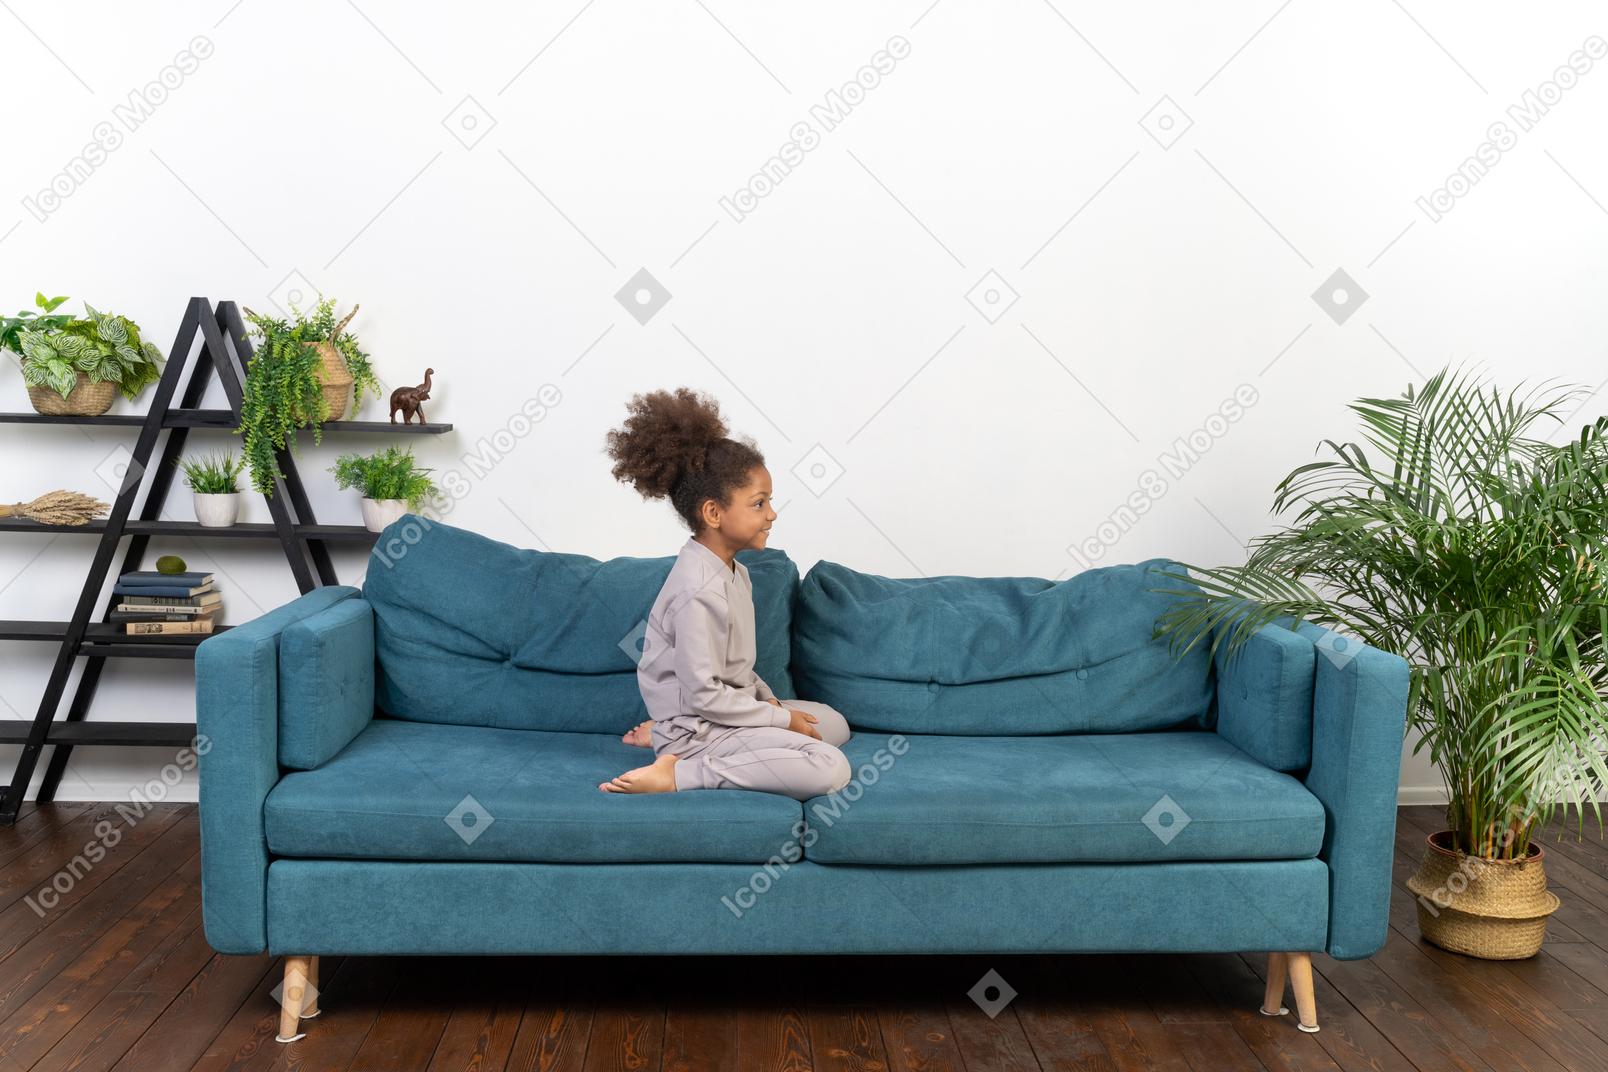 Cute girl on the sofa